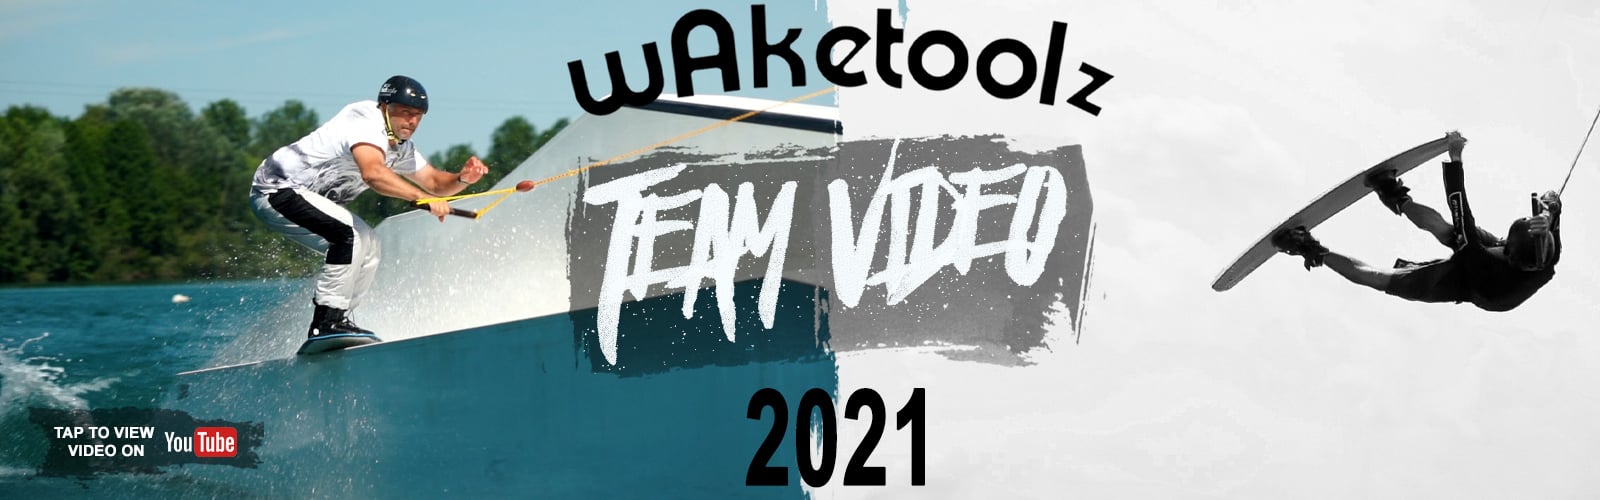 Waketoolz Team Video 2021